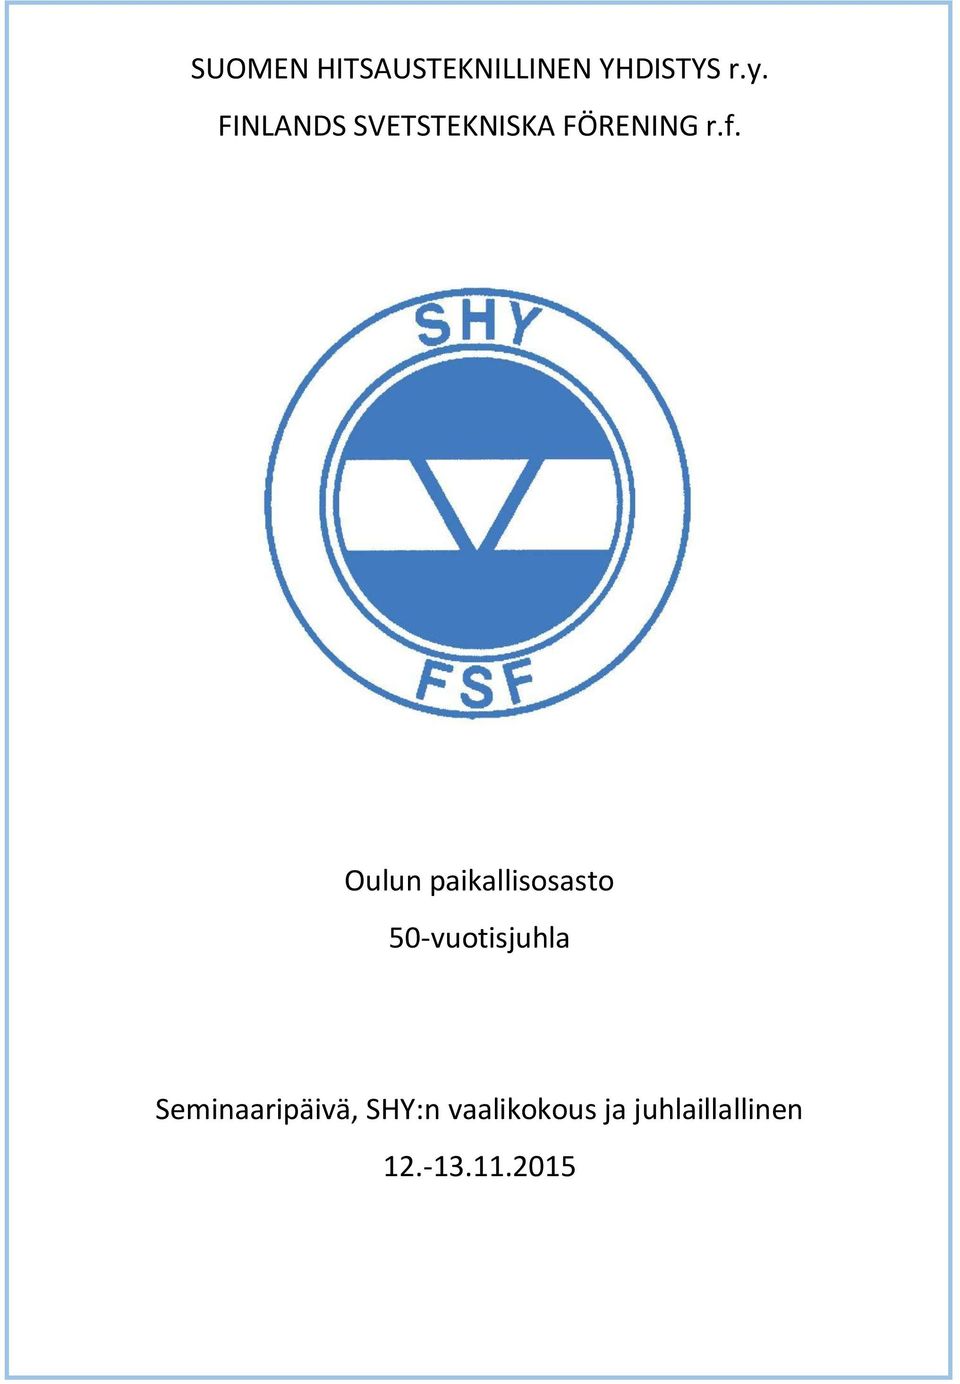 Oulun paikallisosasto 50-vuotisjuhla